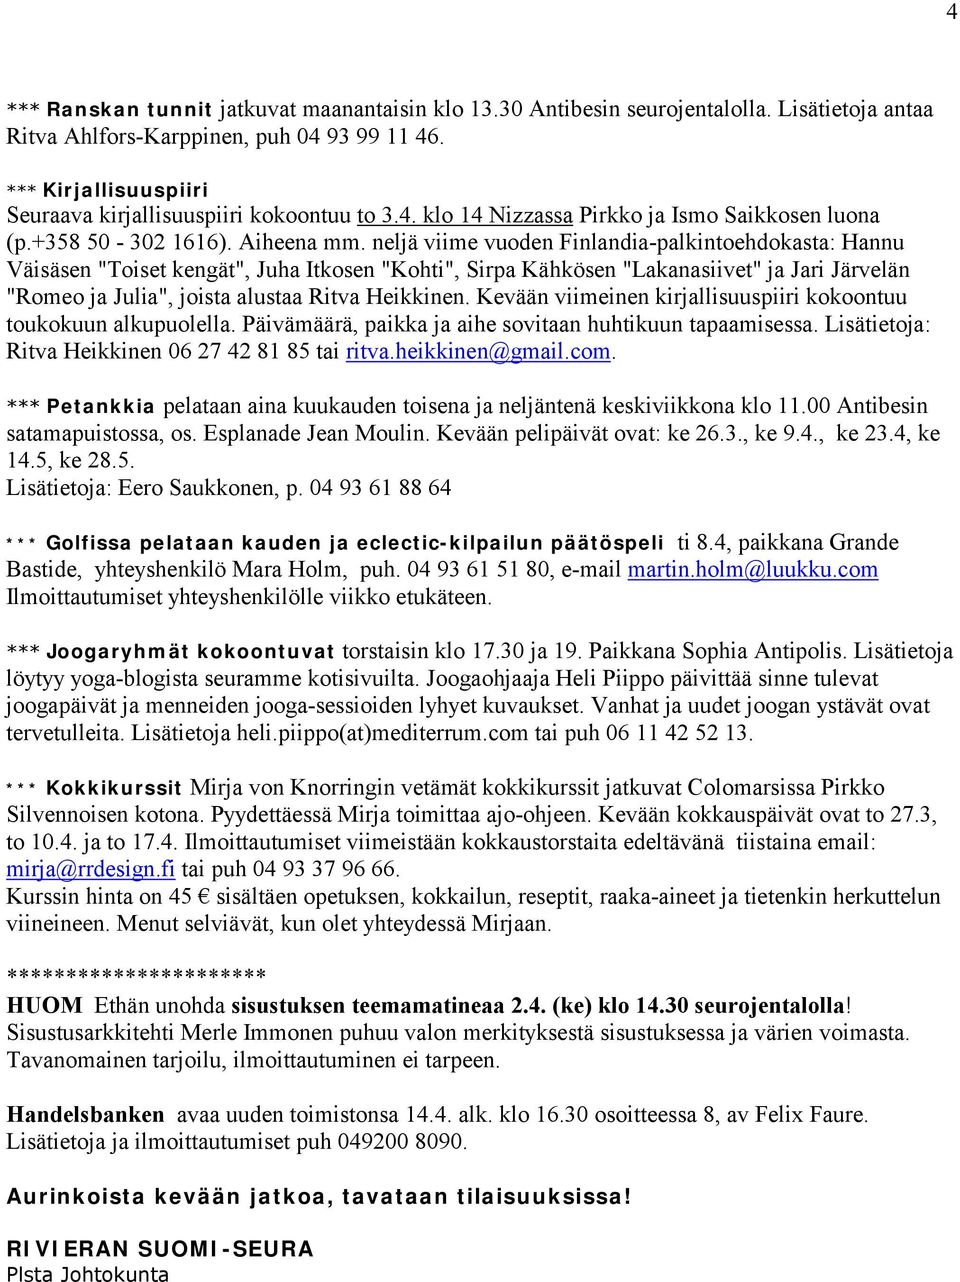 neljä viime vuoden Finlandia-palkintoehdokasta: Hannu Väisäsen "Toiset kengät", Juha Itkosen "Kohti", Sirpa Kähkösen "Lakanasiivet" ja Jari Järvelän "Romeo ja Julia", joista alustaa Ritva Heikkinen.